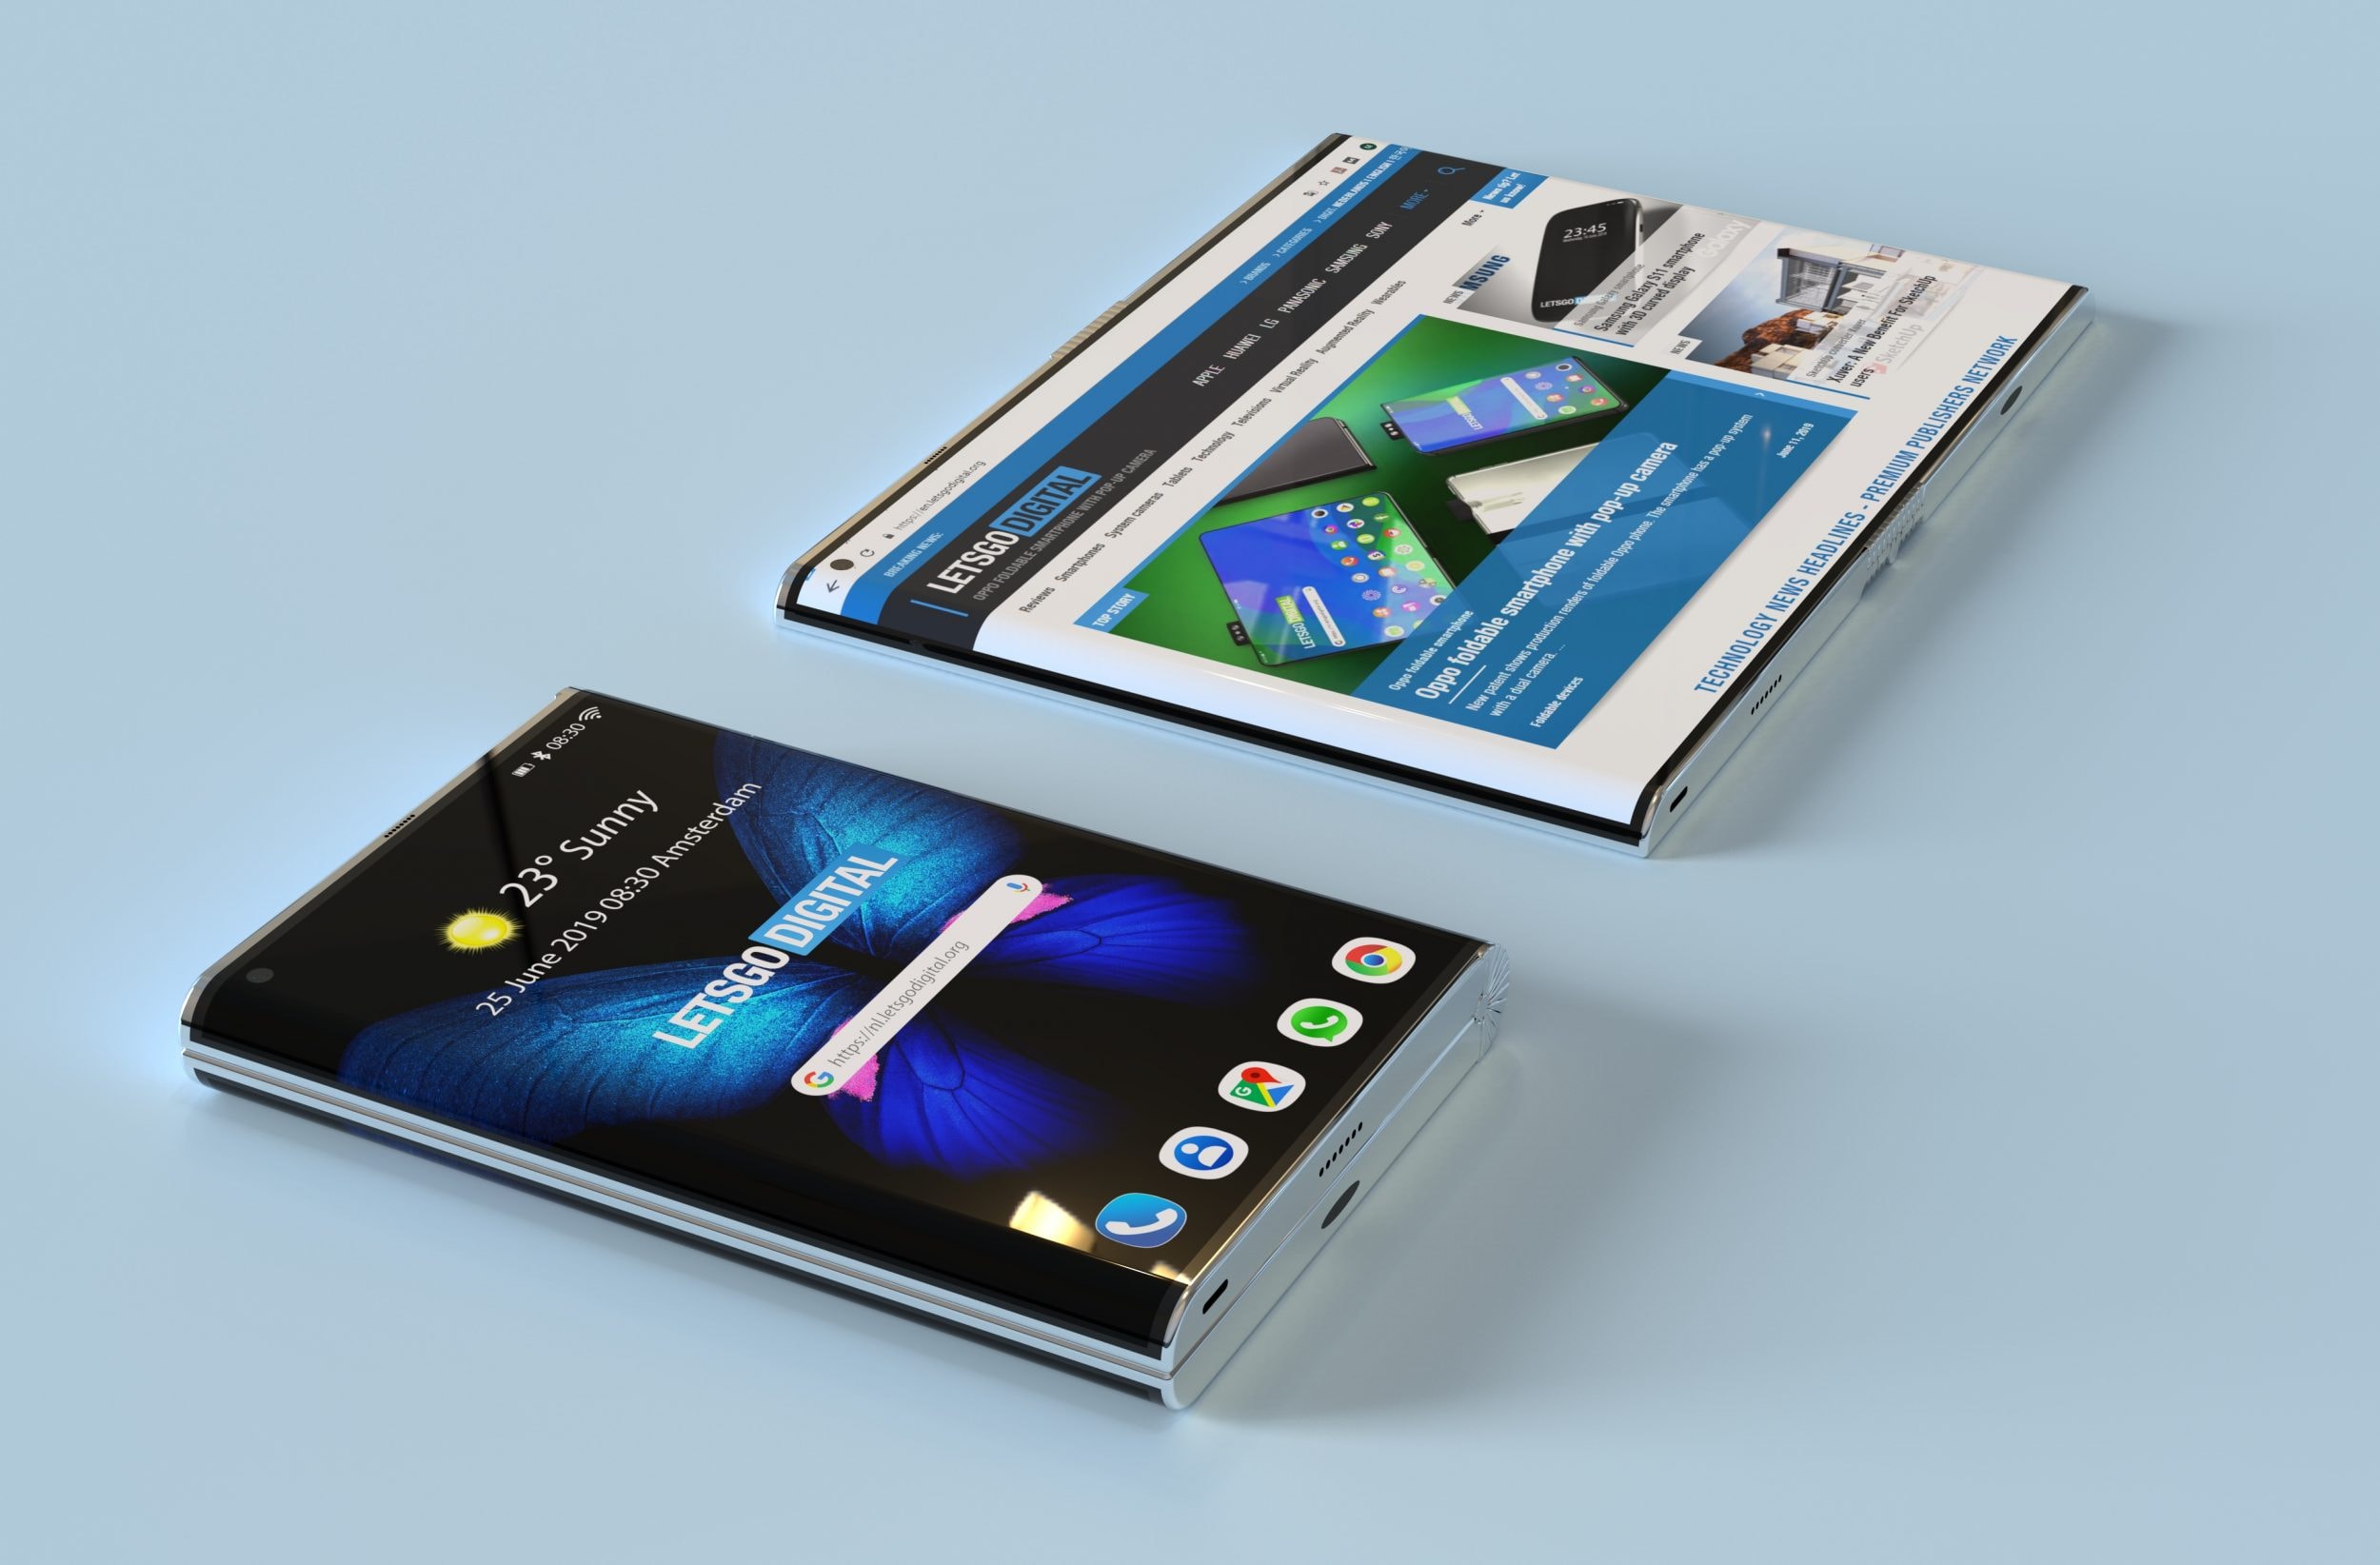 Samsung no pierde el hábito de los bordes curvos: aquí están en un nuevo proyecto de teléfono inteligente plegable (foto)